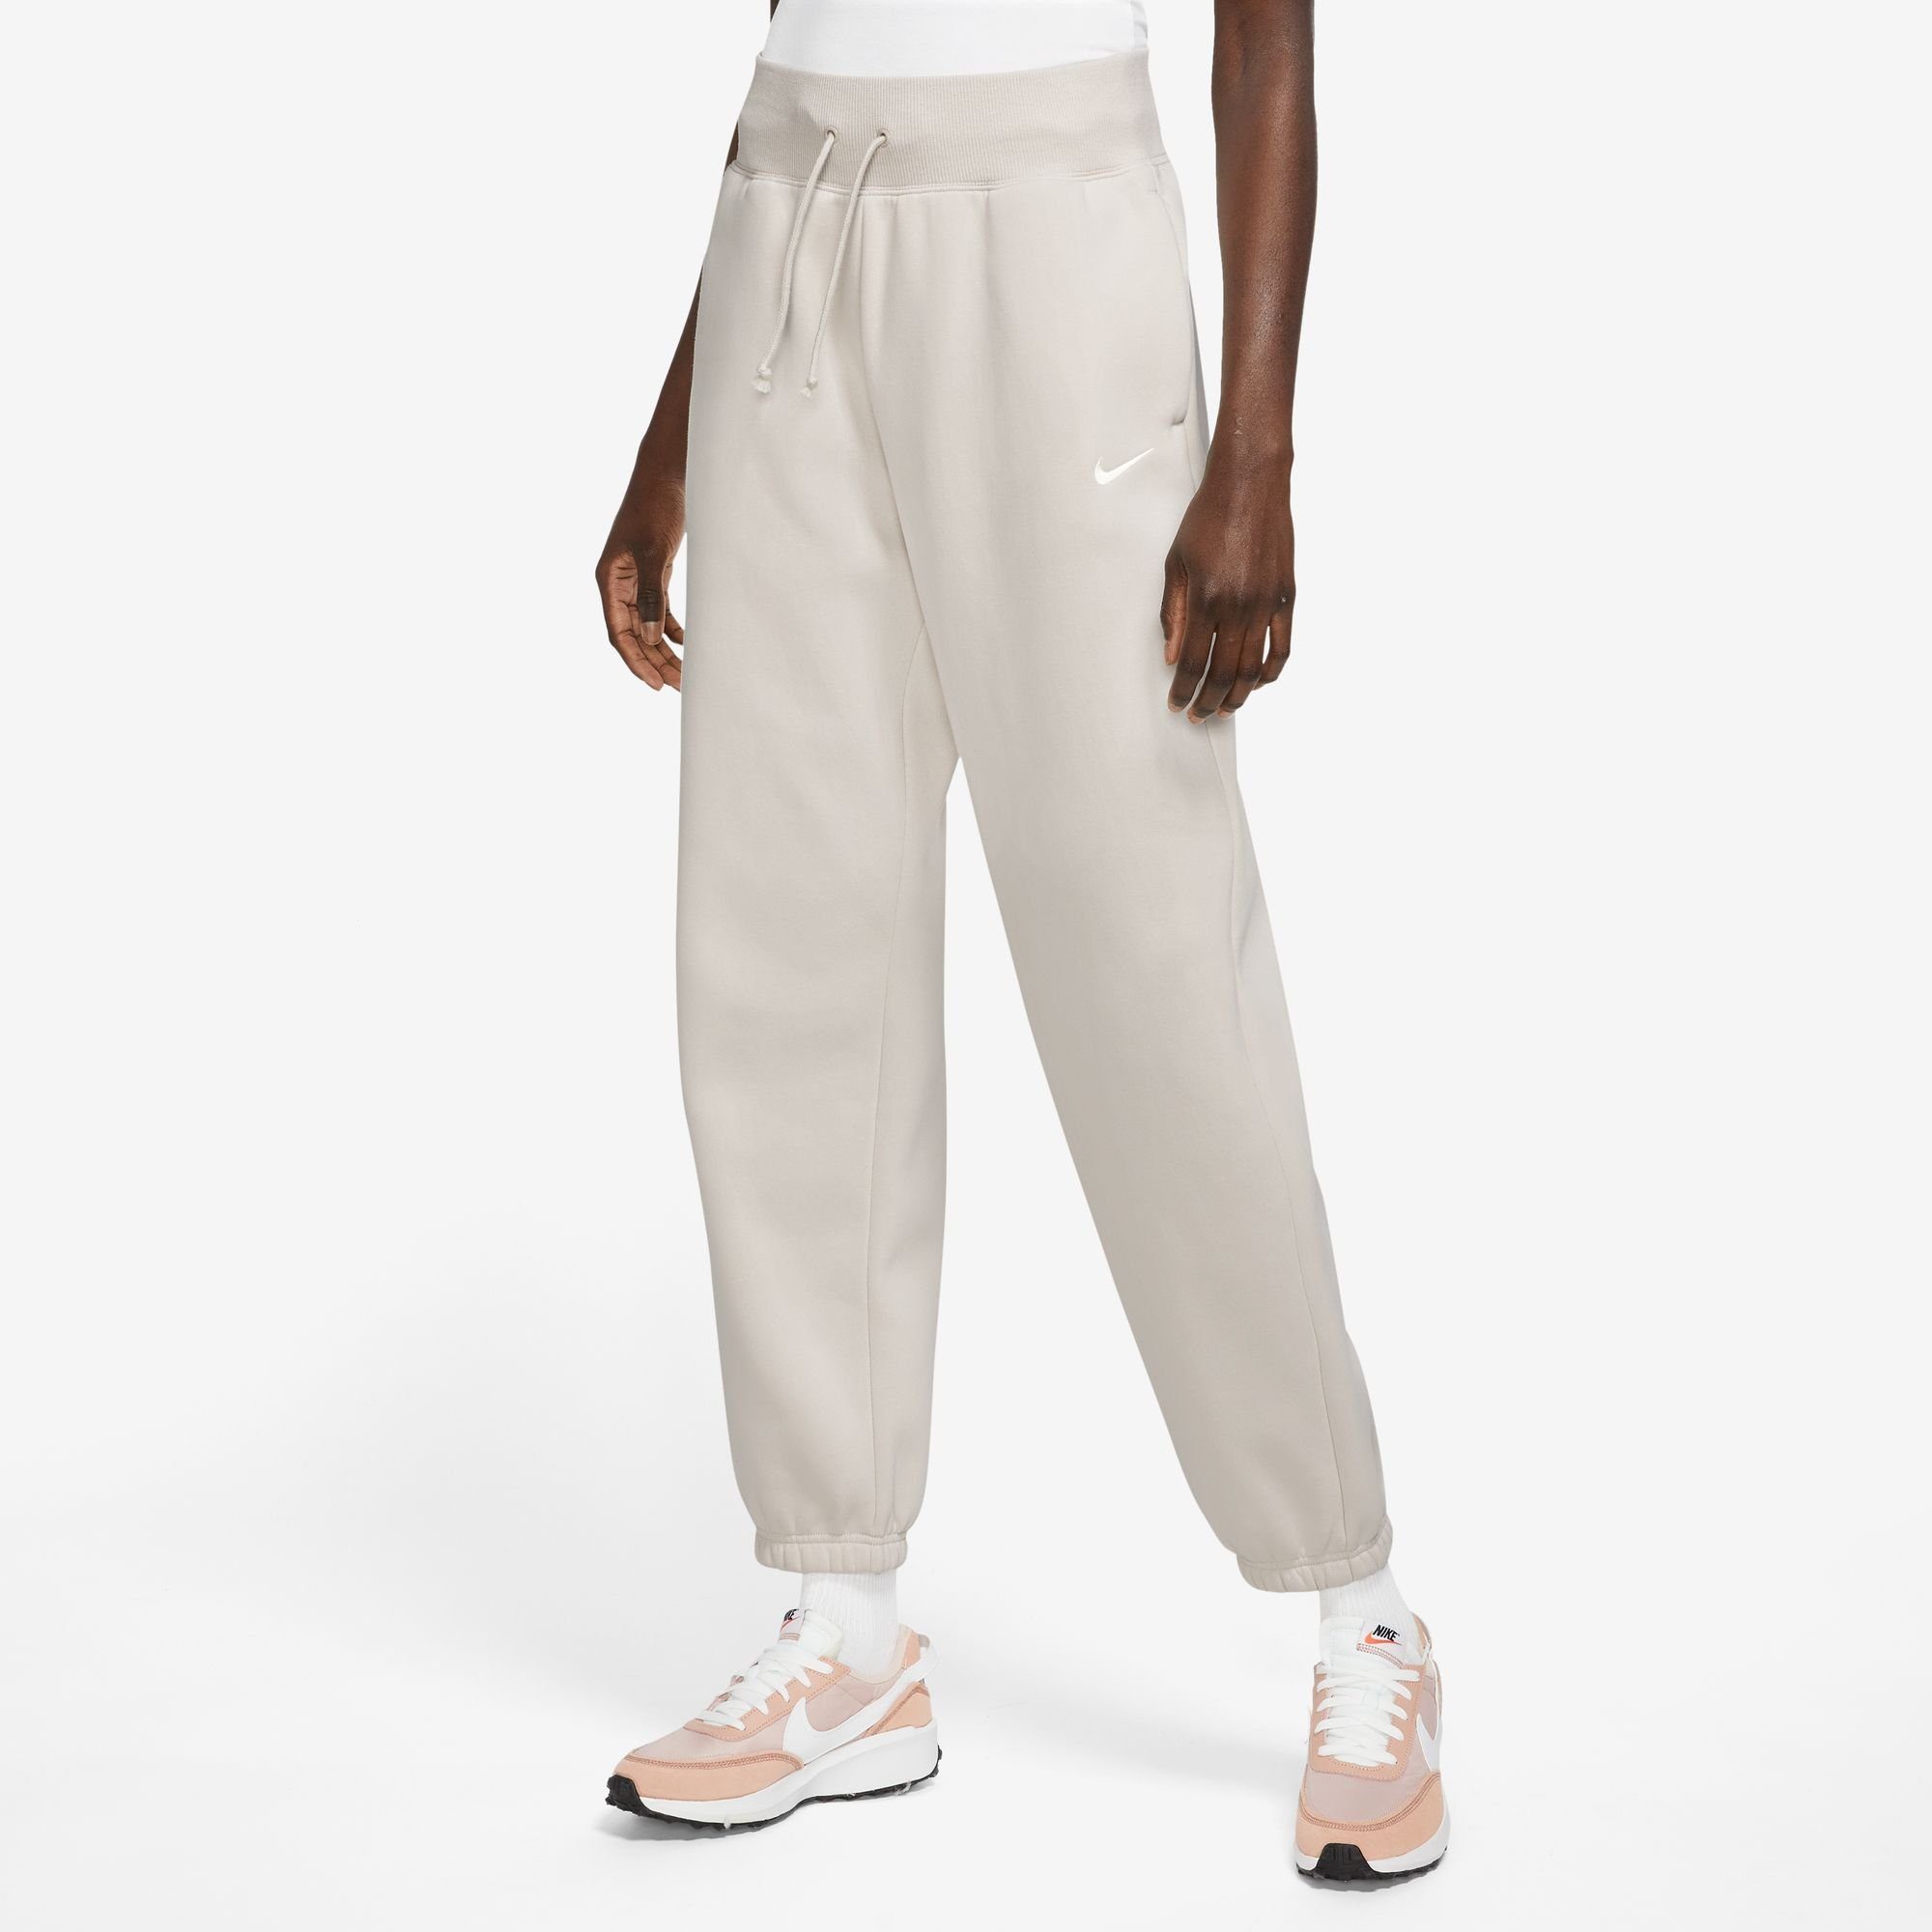 HIGH-WAISTED LT FLEECE Jogginghose PHOENIX Nike SWEATPANTS BRN/SAIL OVERSIZED WOMEN'S OREWOOD Sportswear